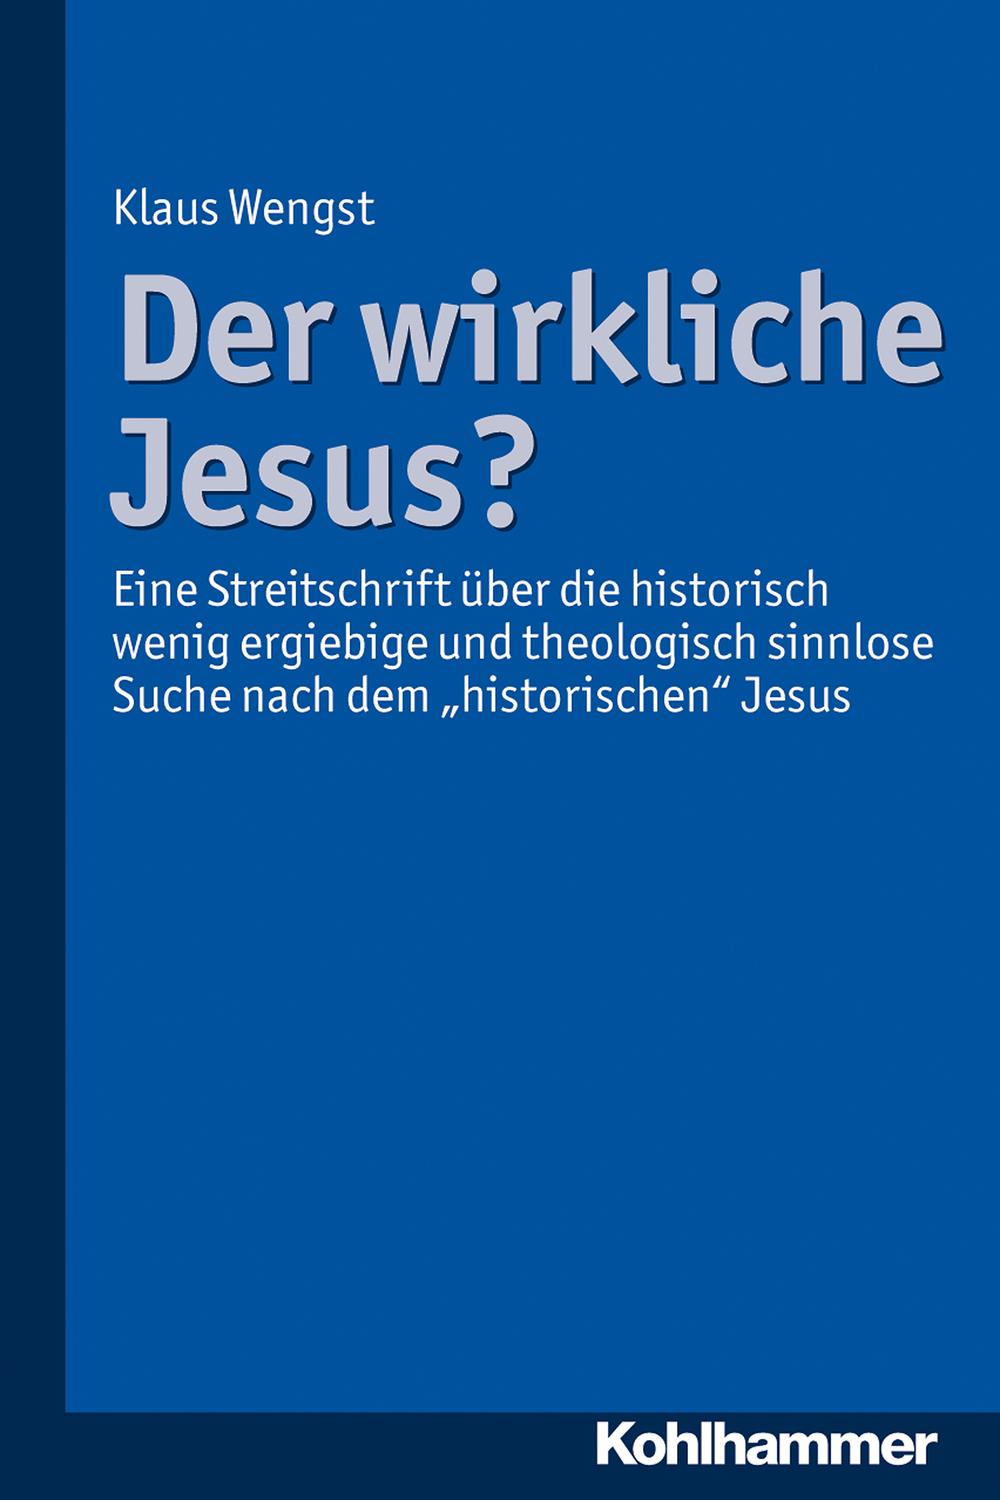 Der wirkliche Jesus? - Klaus Wengst